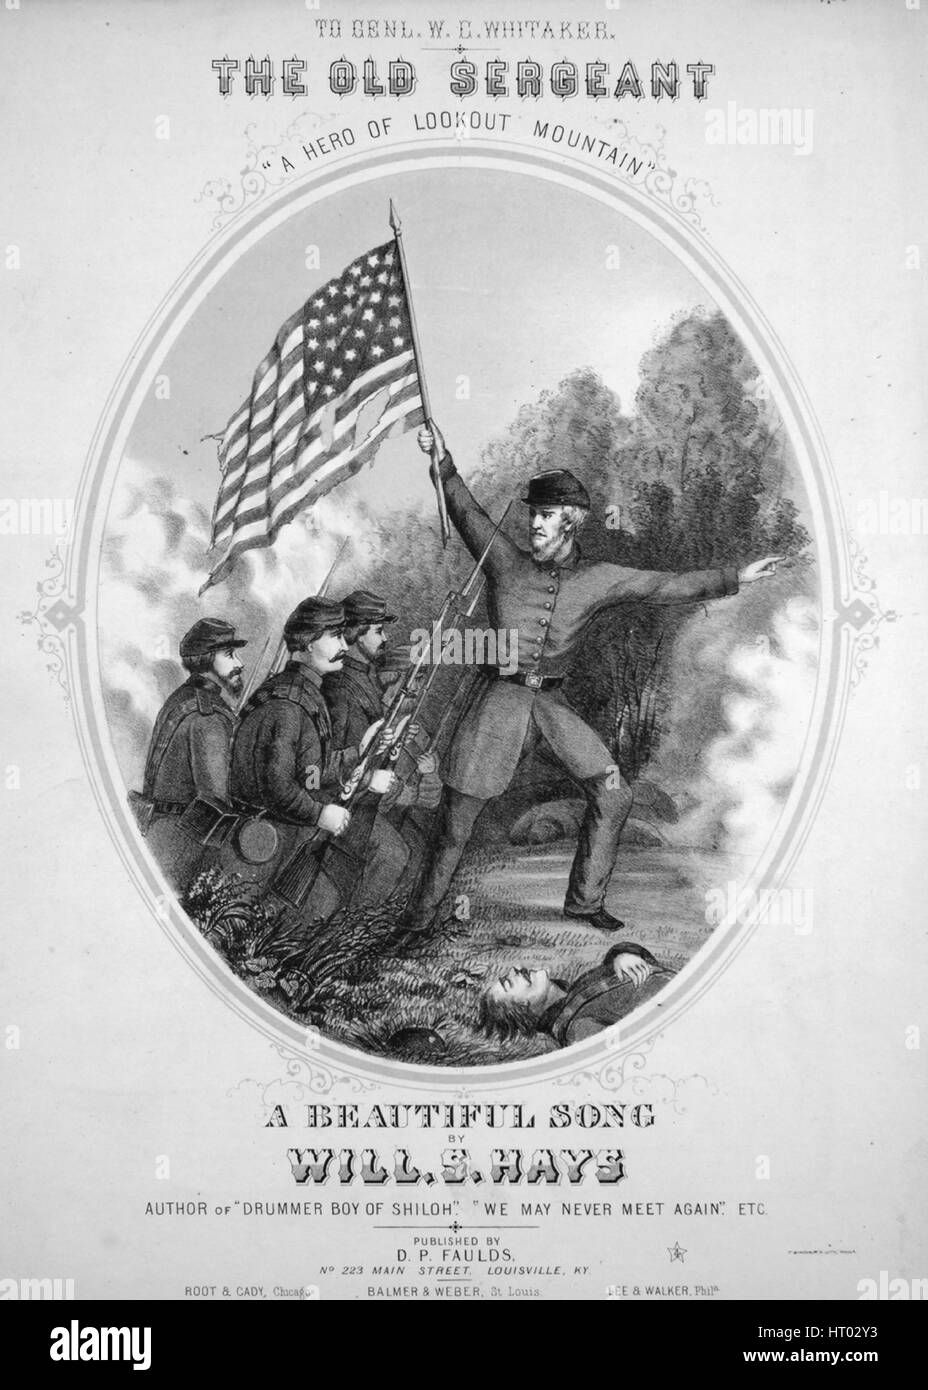 Sheet Music image de couverture de la chanson 'le vieux Sergent 'un héros de  Lookout Mountain'', avec des notes d'auteur original lire 'une belle  chanson par VA S Hays', 1864. L'éditeur est